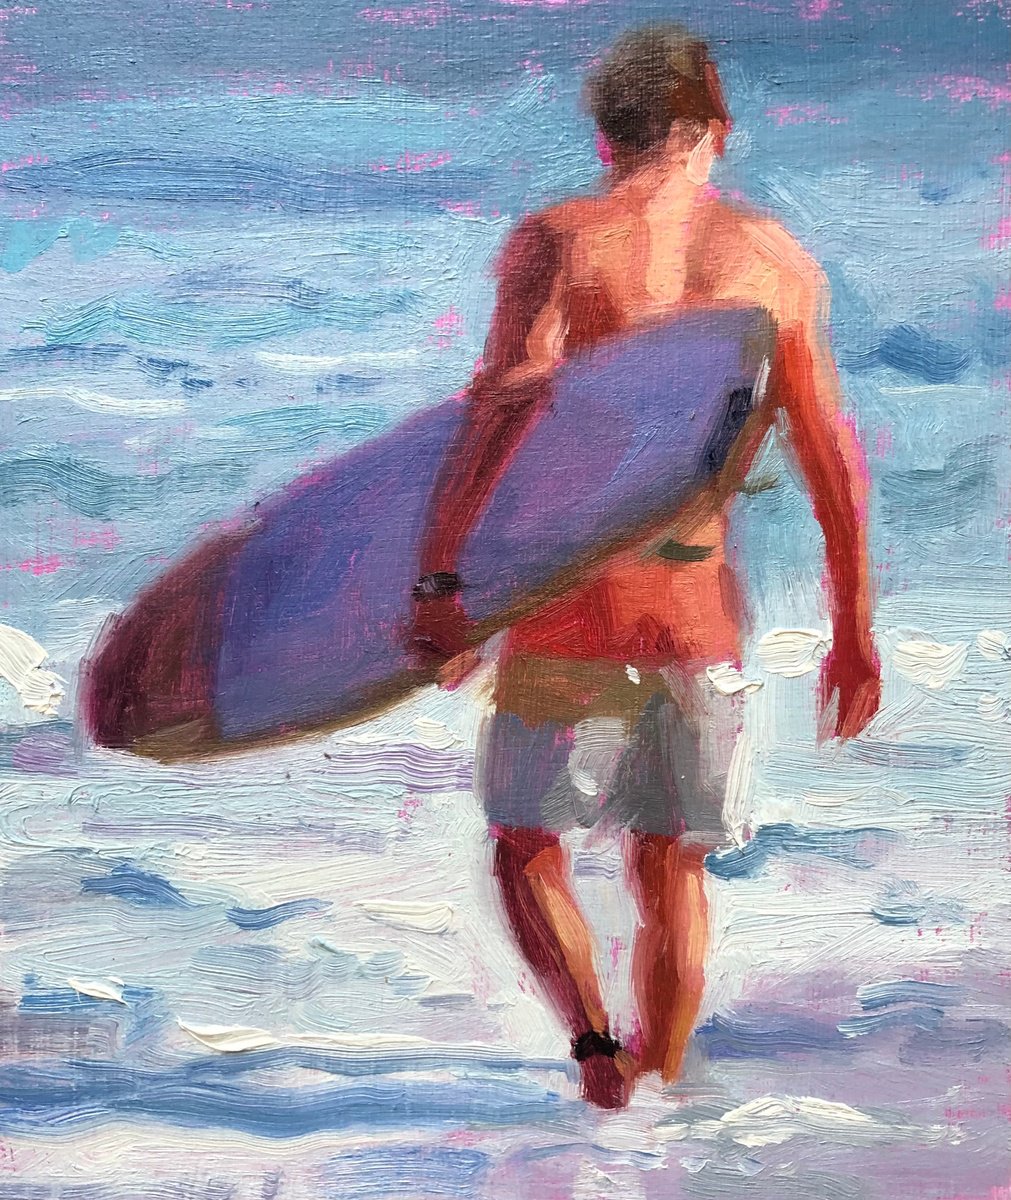 Late Summer Surf by Peter Keegan